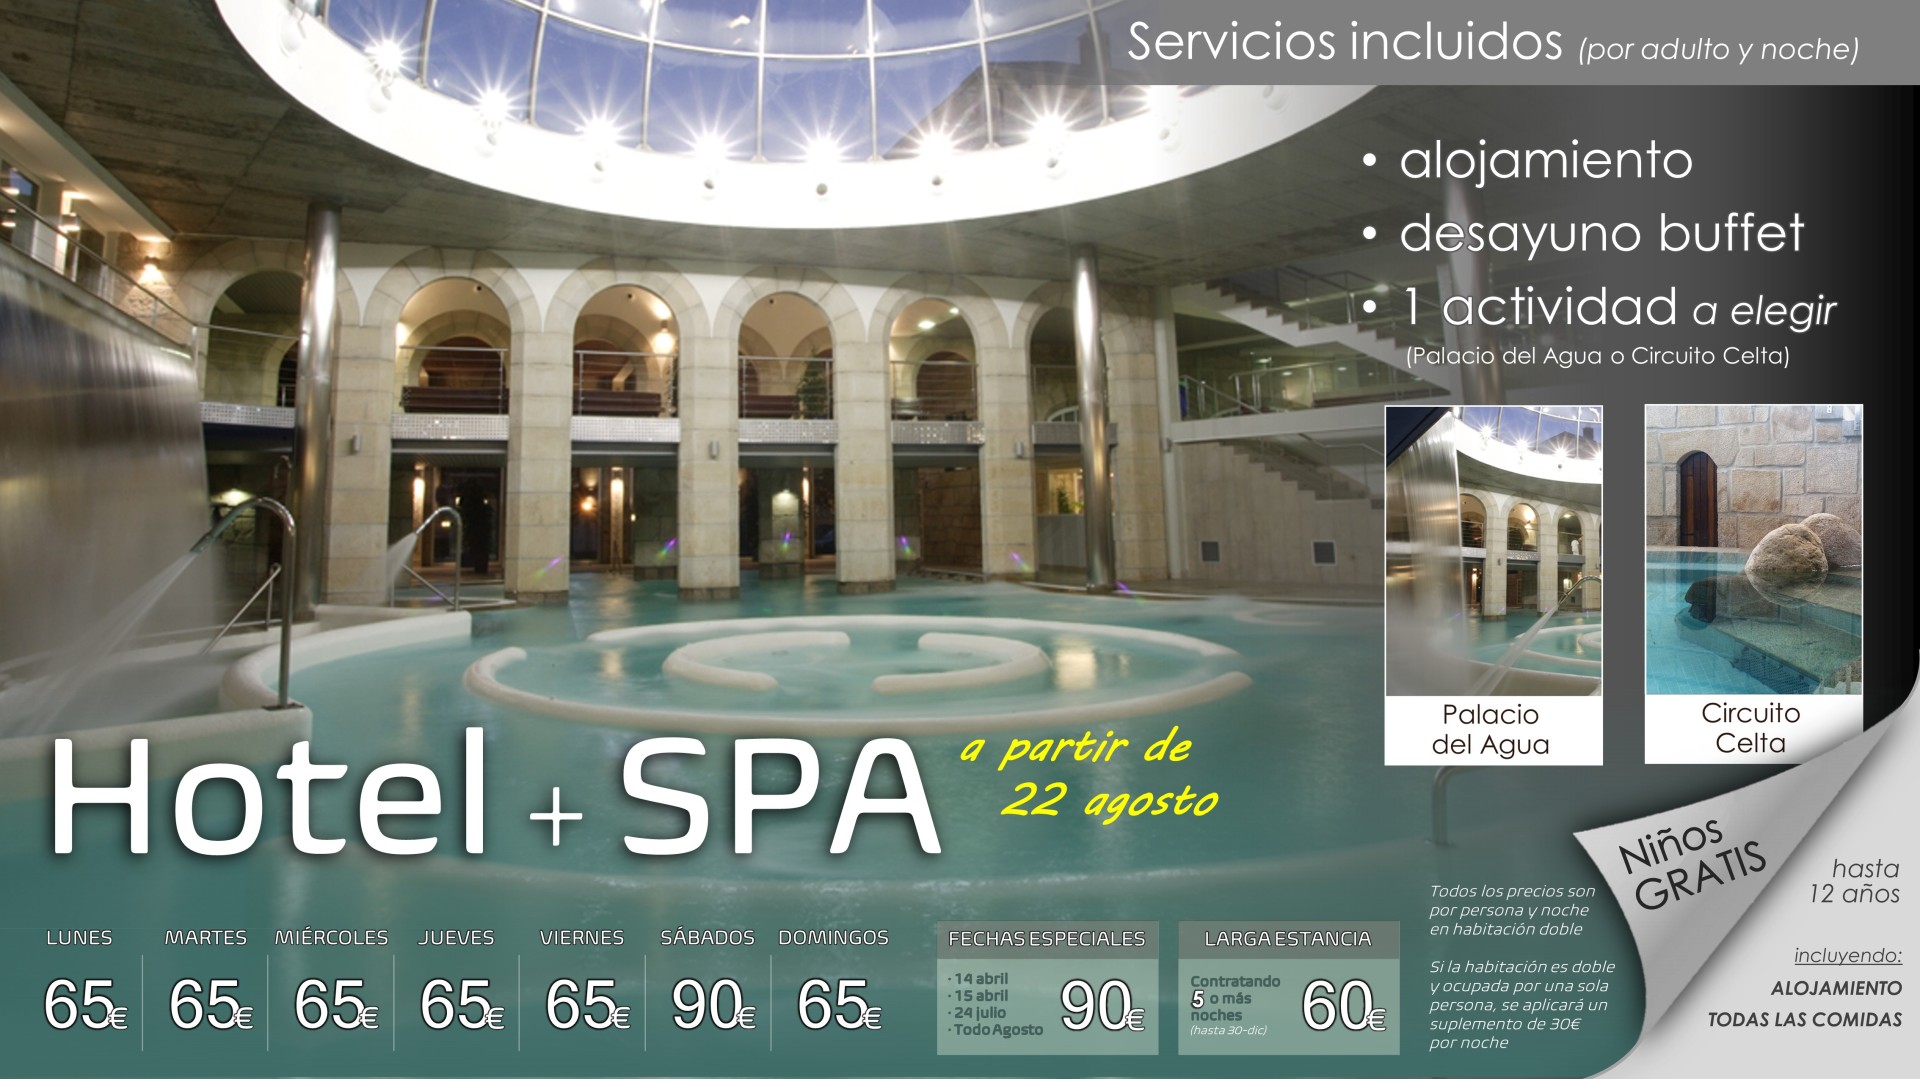 Programa HOTEL + SPA  a partir de 22 agosto